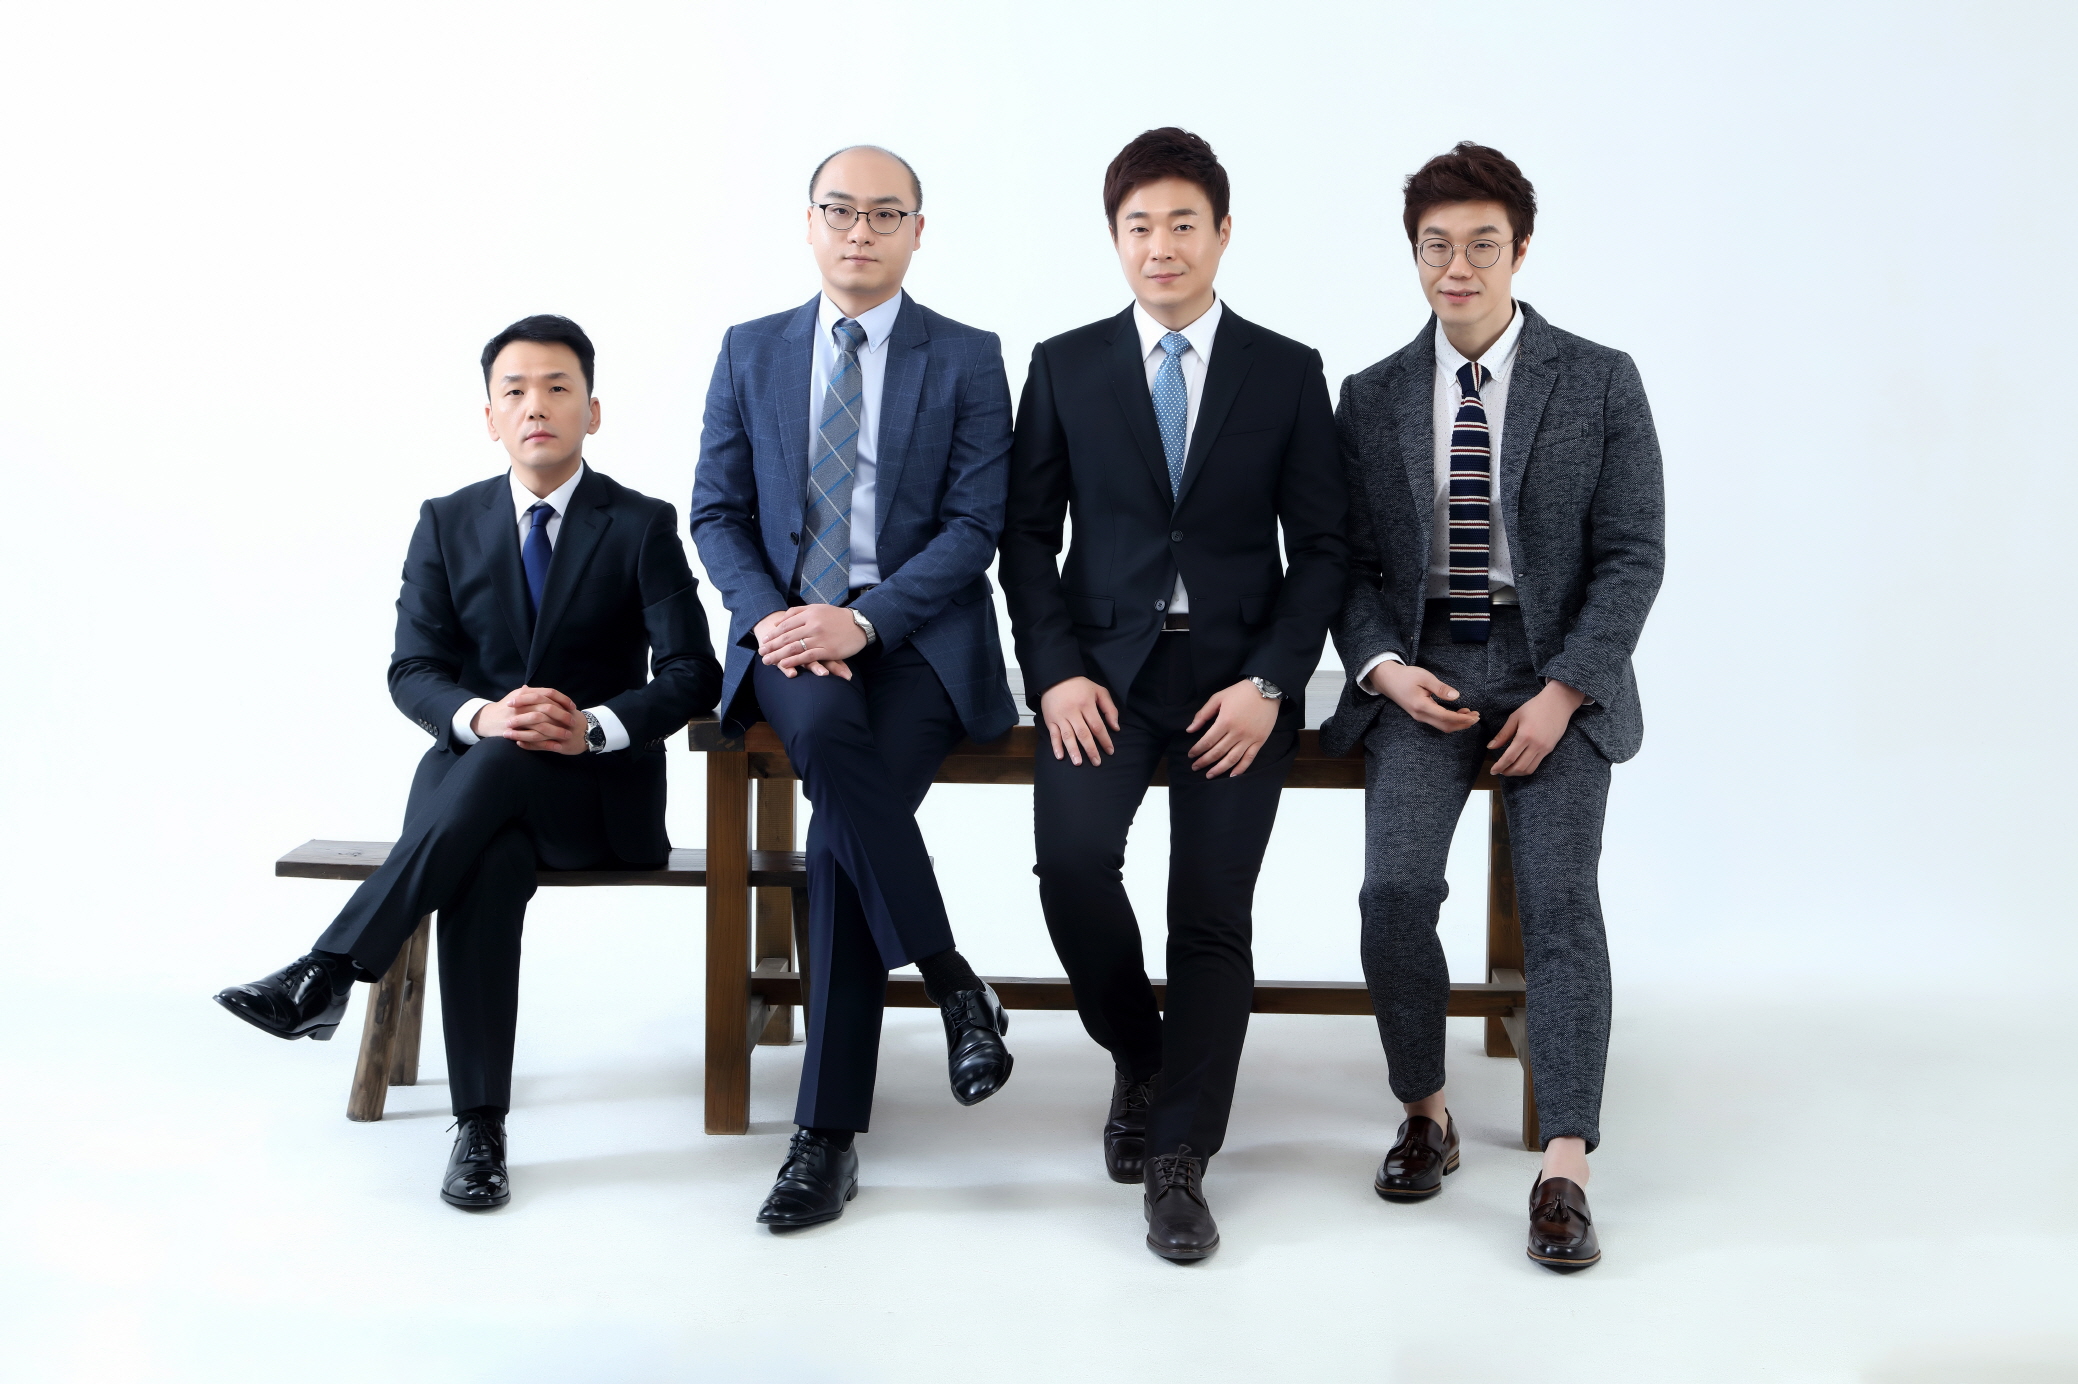 김기환, 박경훈, 정대권, 김상욱 강사 (좌측부터)